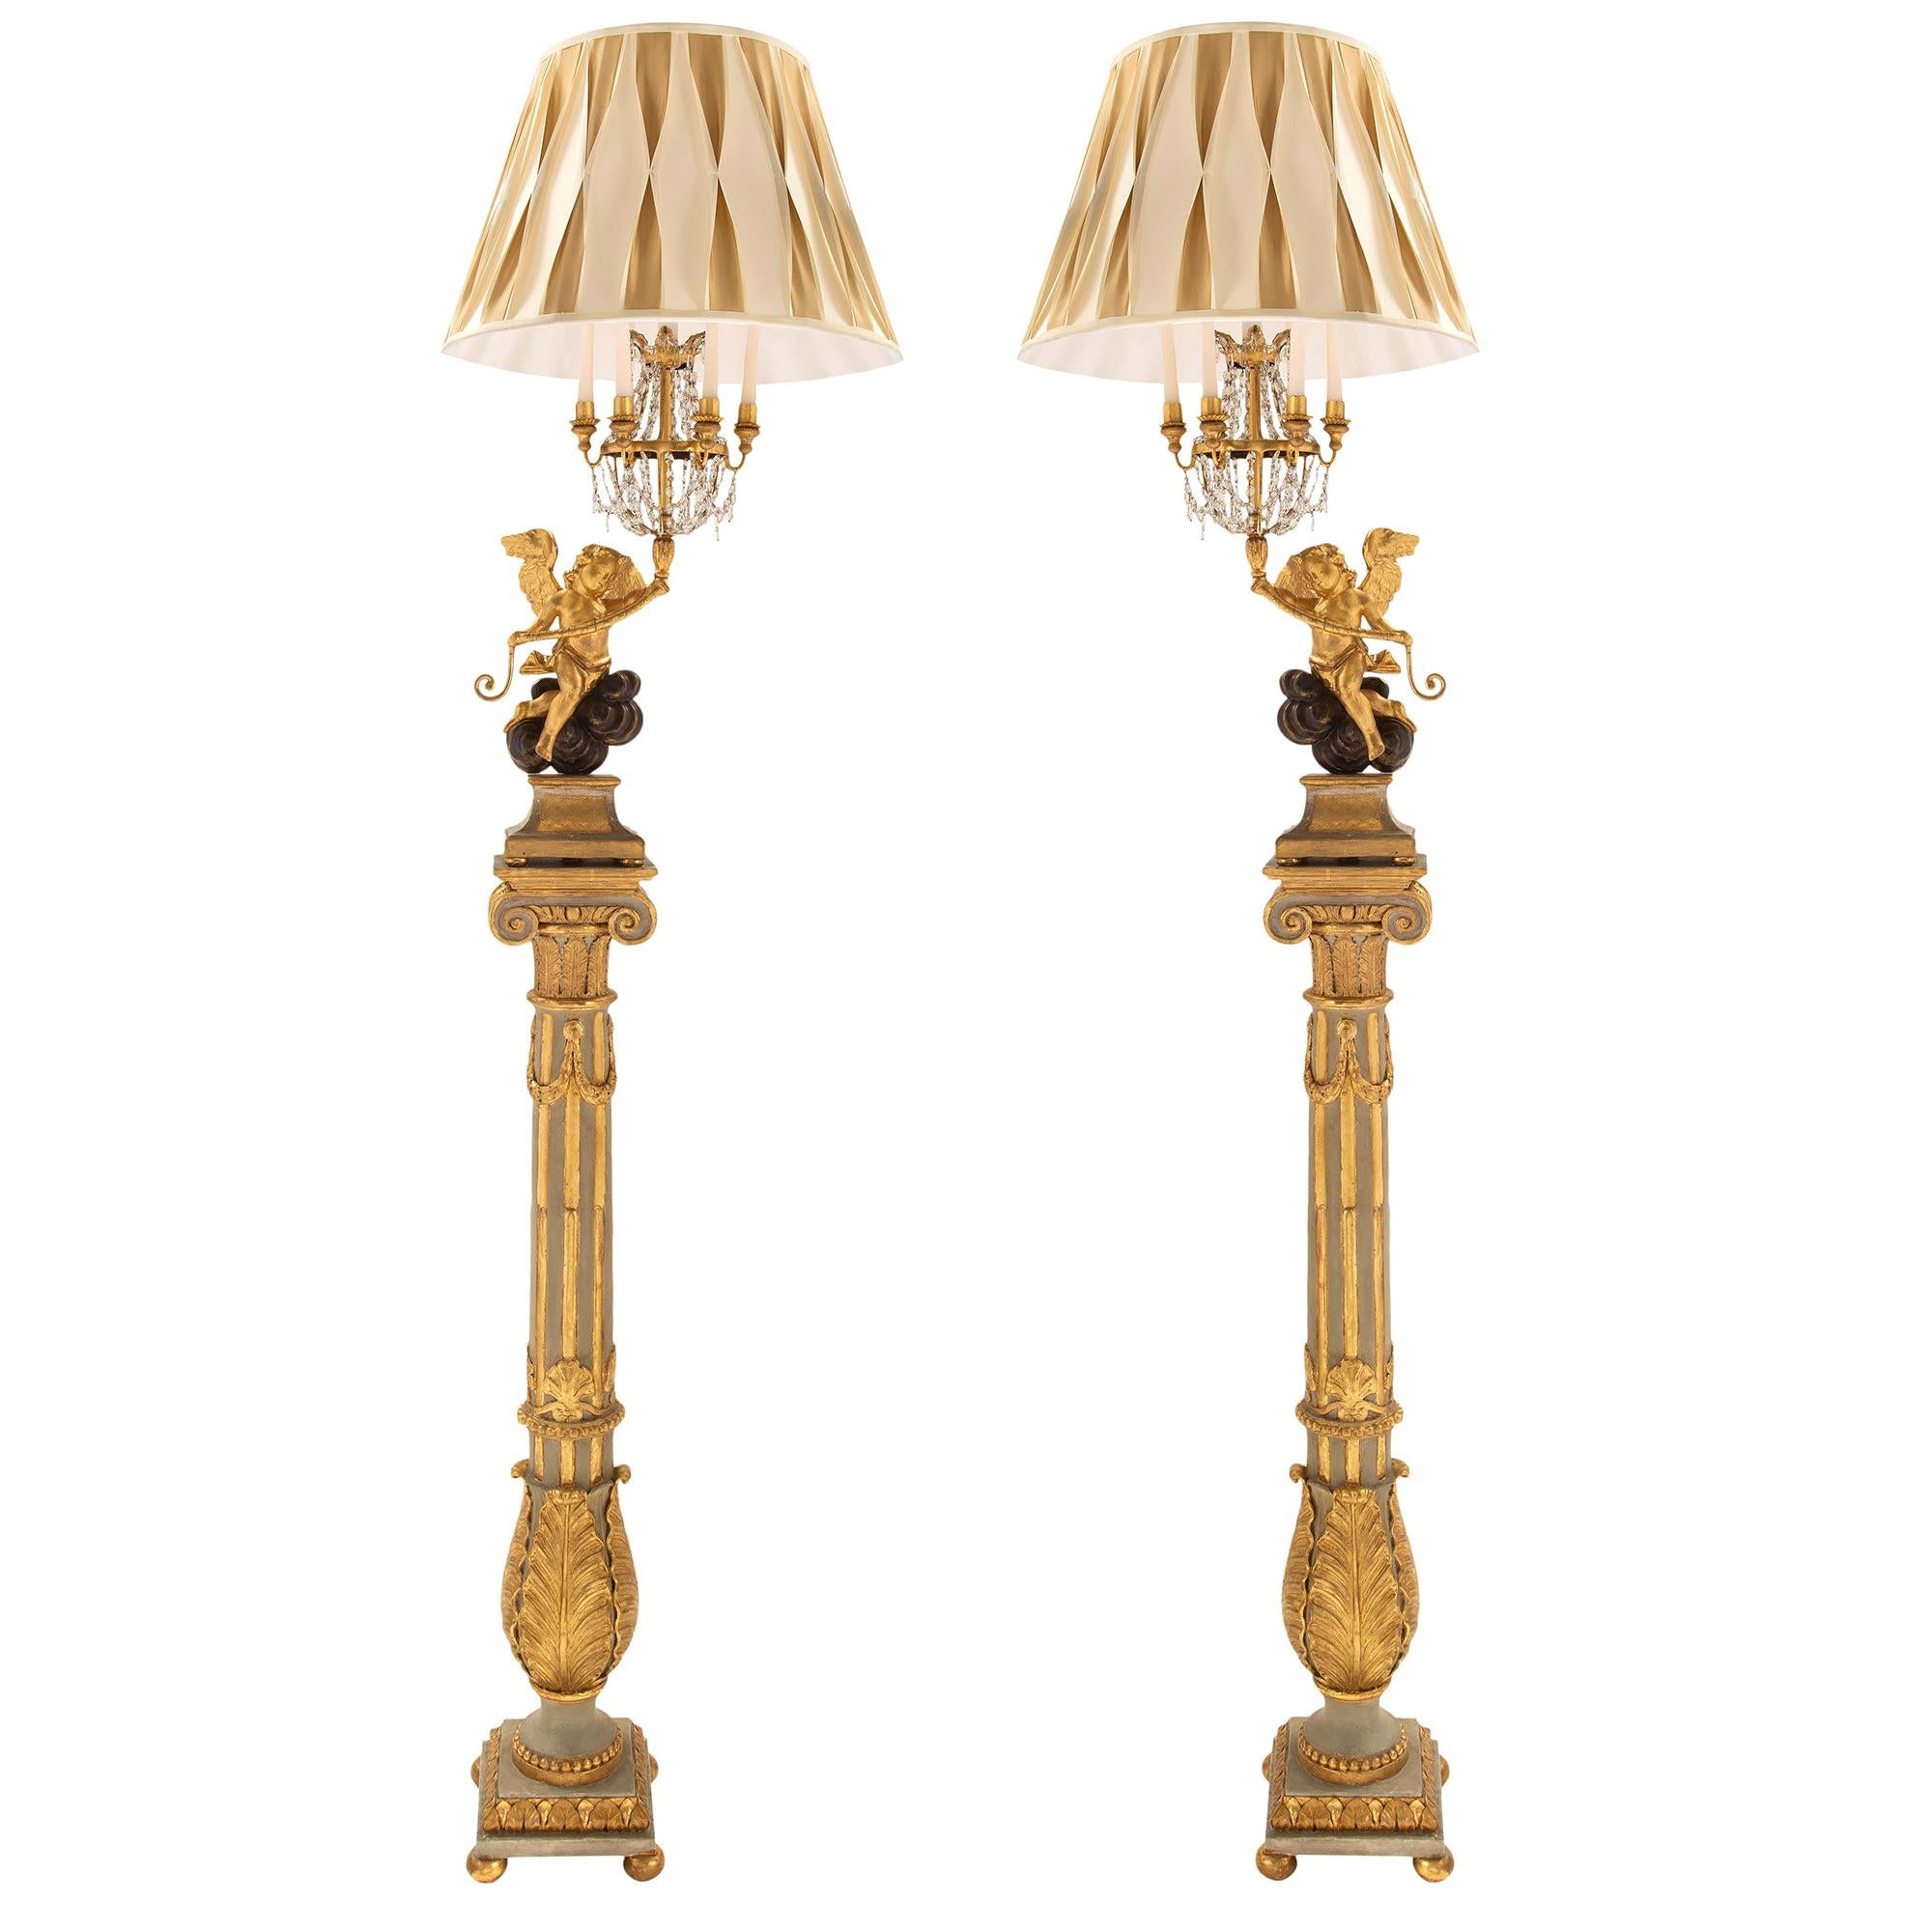 Paire de véritables lampadaires italiens en bois doré de style Louis XVI du début du XIXe siècle